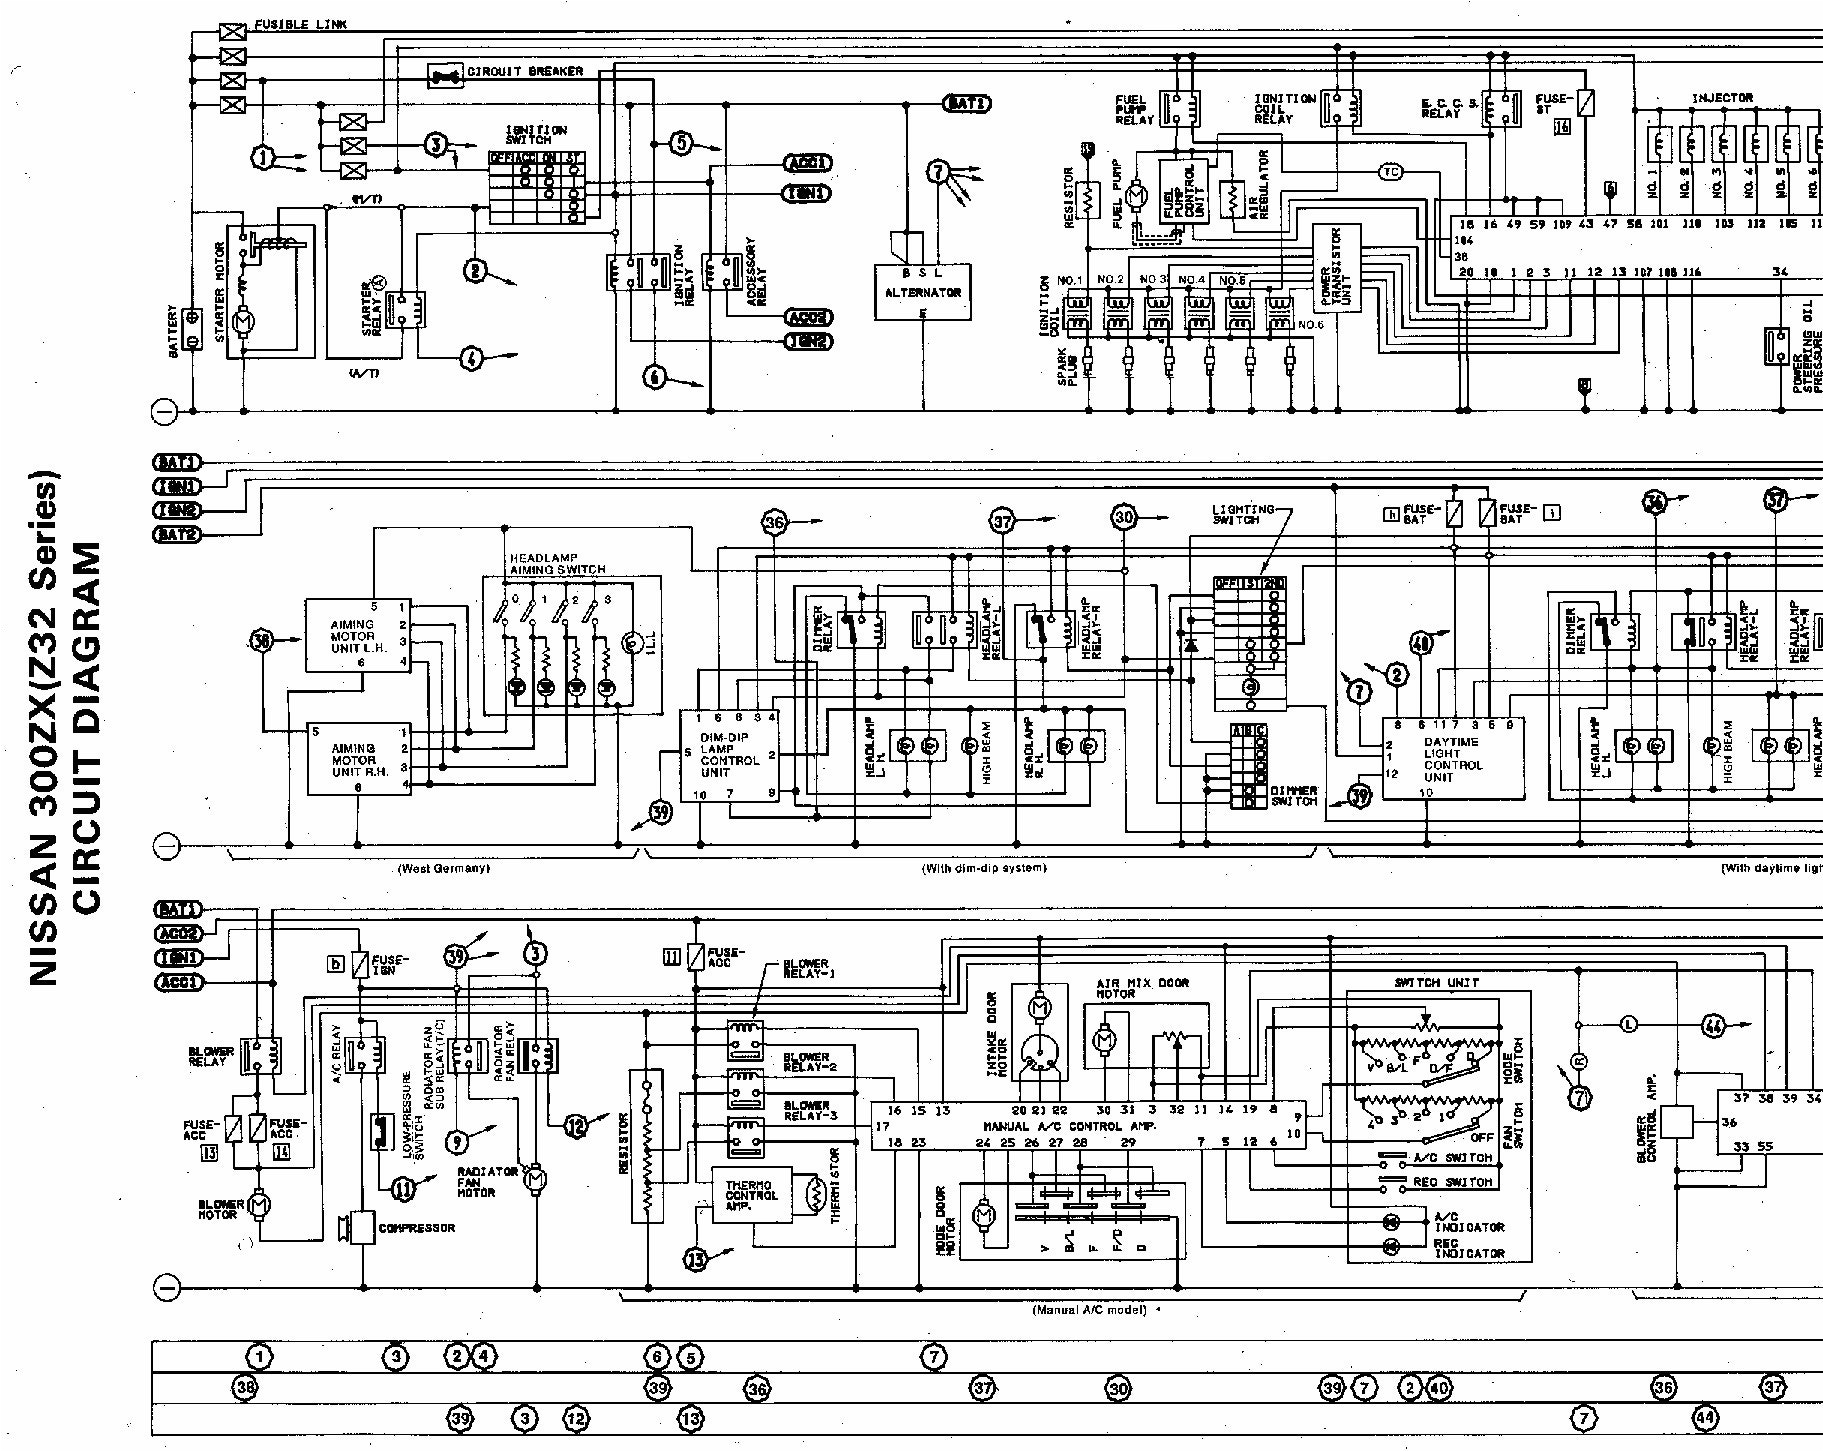 wiring diagram nissan navara wiring diagram database nissan navara d40 wiring diagram head unit nissan navara